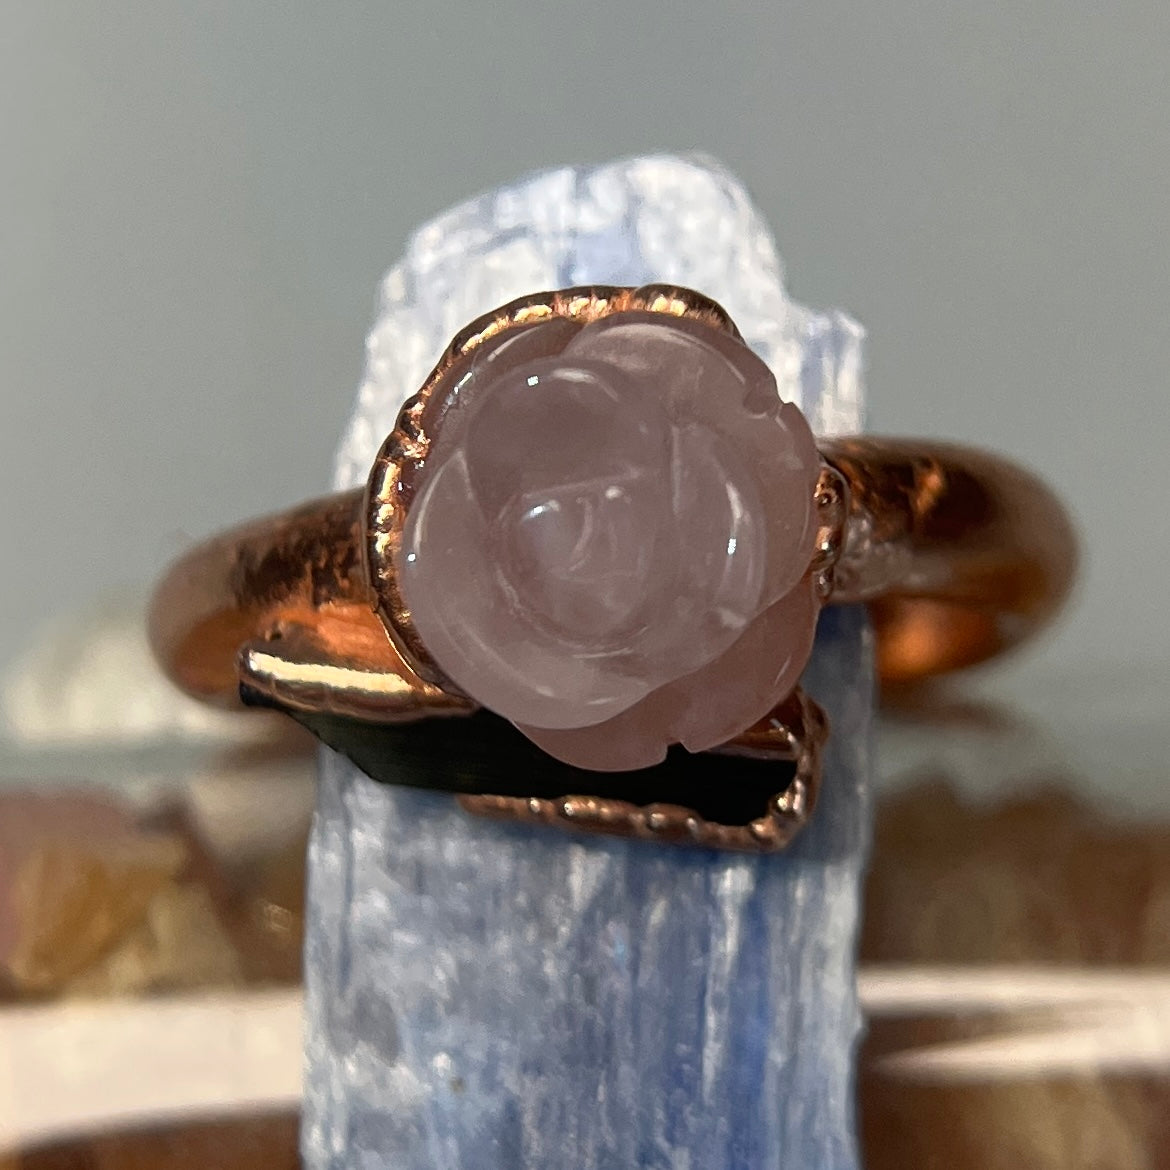 Rose Quartz Tourmaline Ring